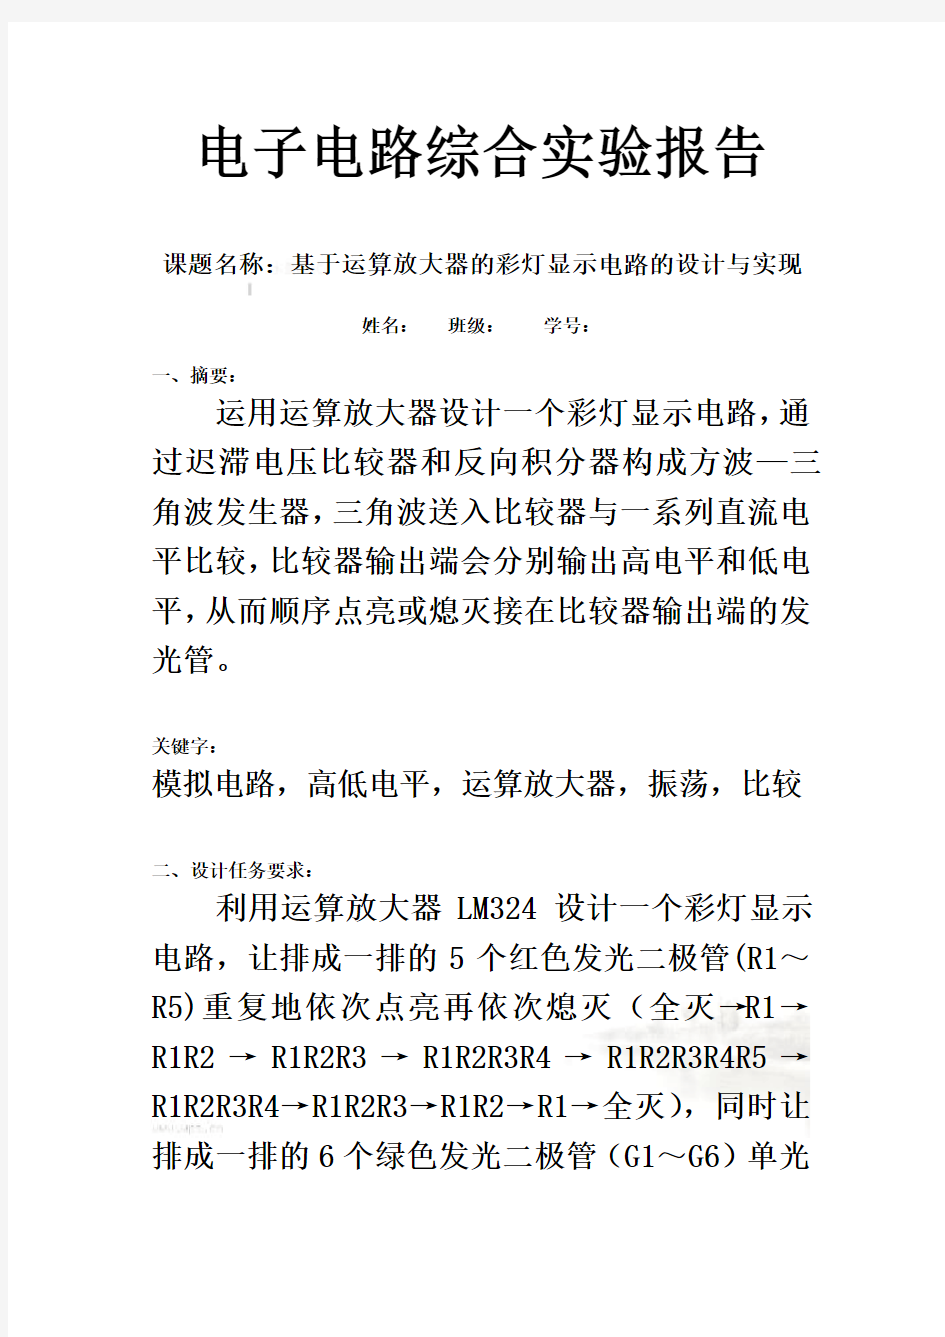 北京邮电大学电路实验报告-(小彩灯)